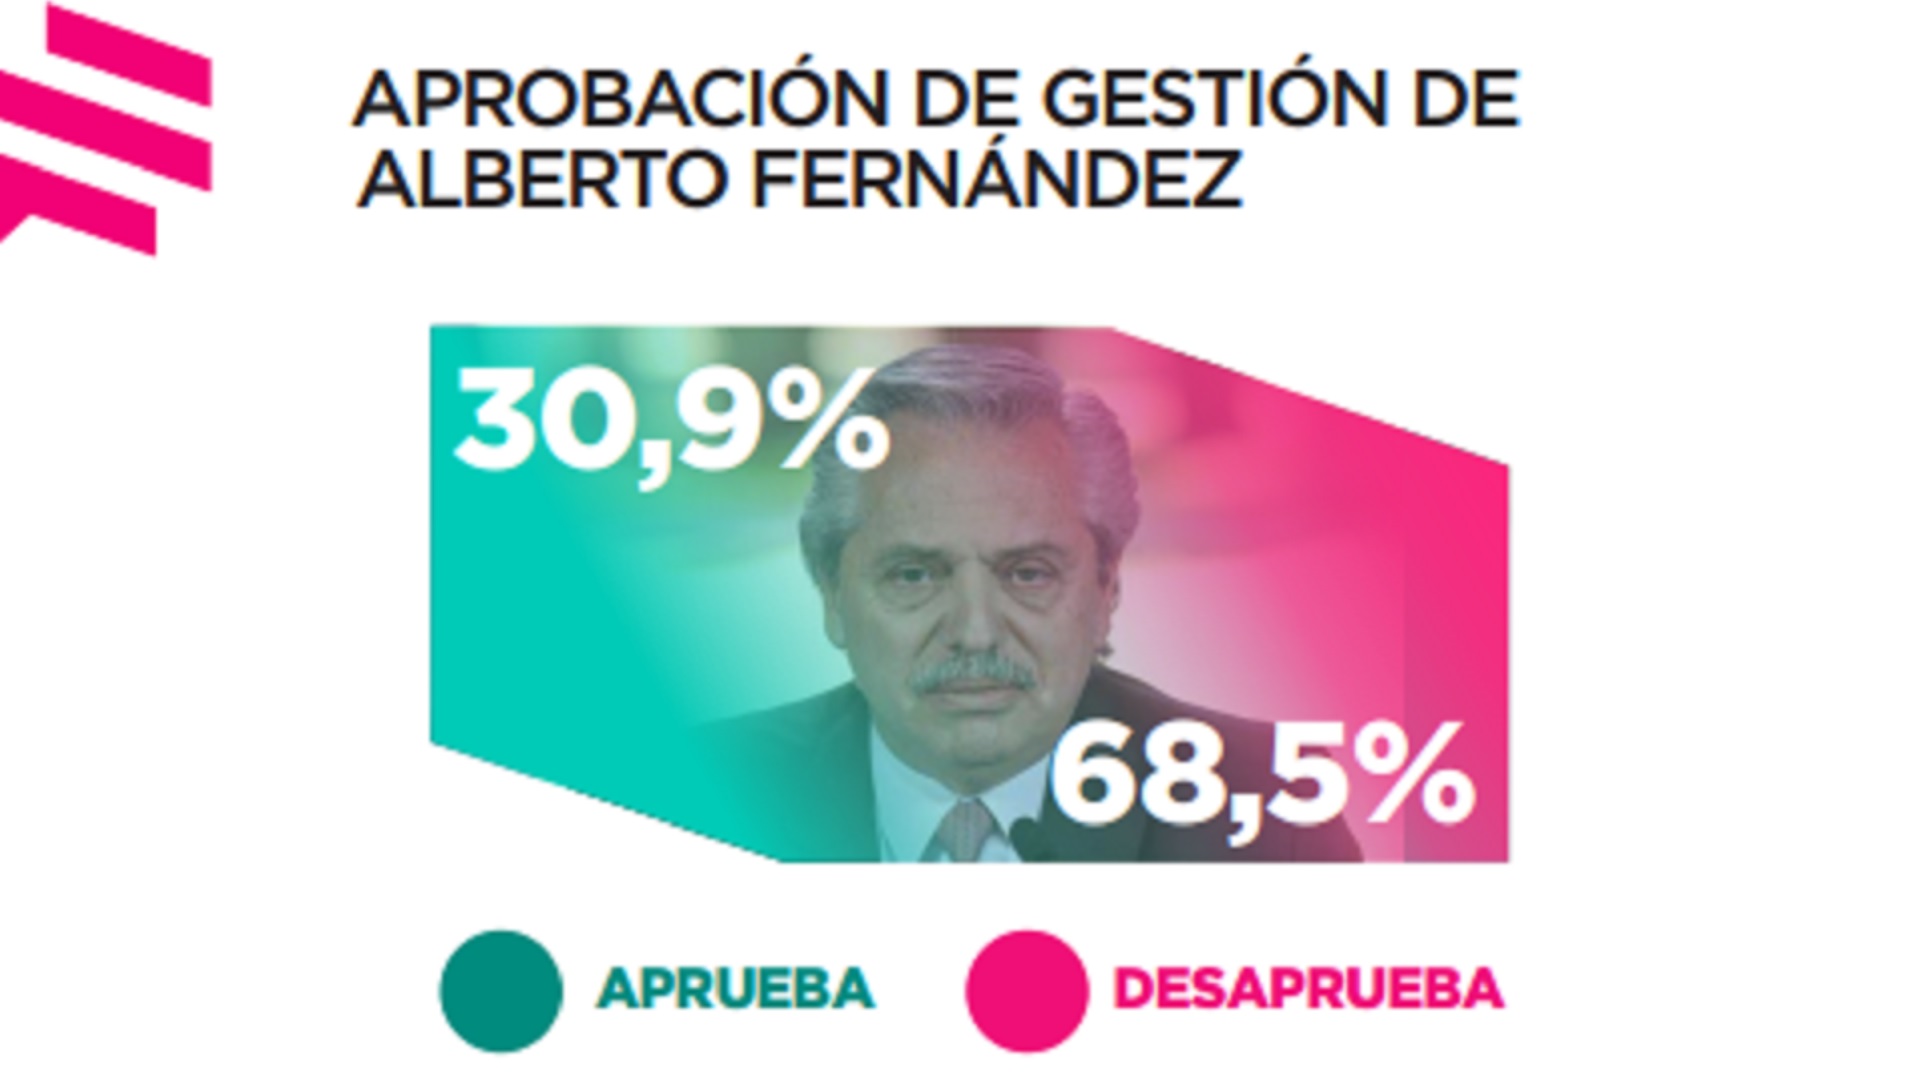 Según el estudio de Zuban Córdoba y asociados, la mayor parte de los argentinos no avala la gestión del actual Gobierno